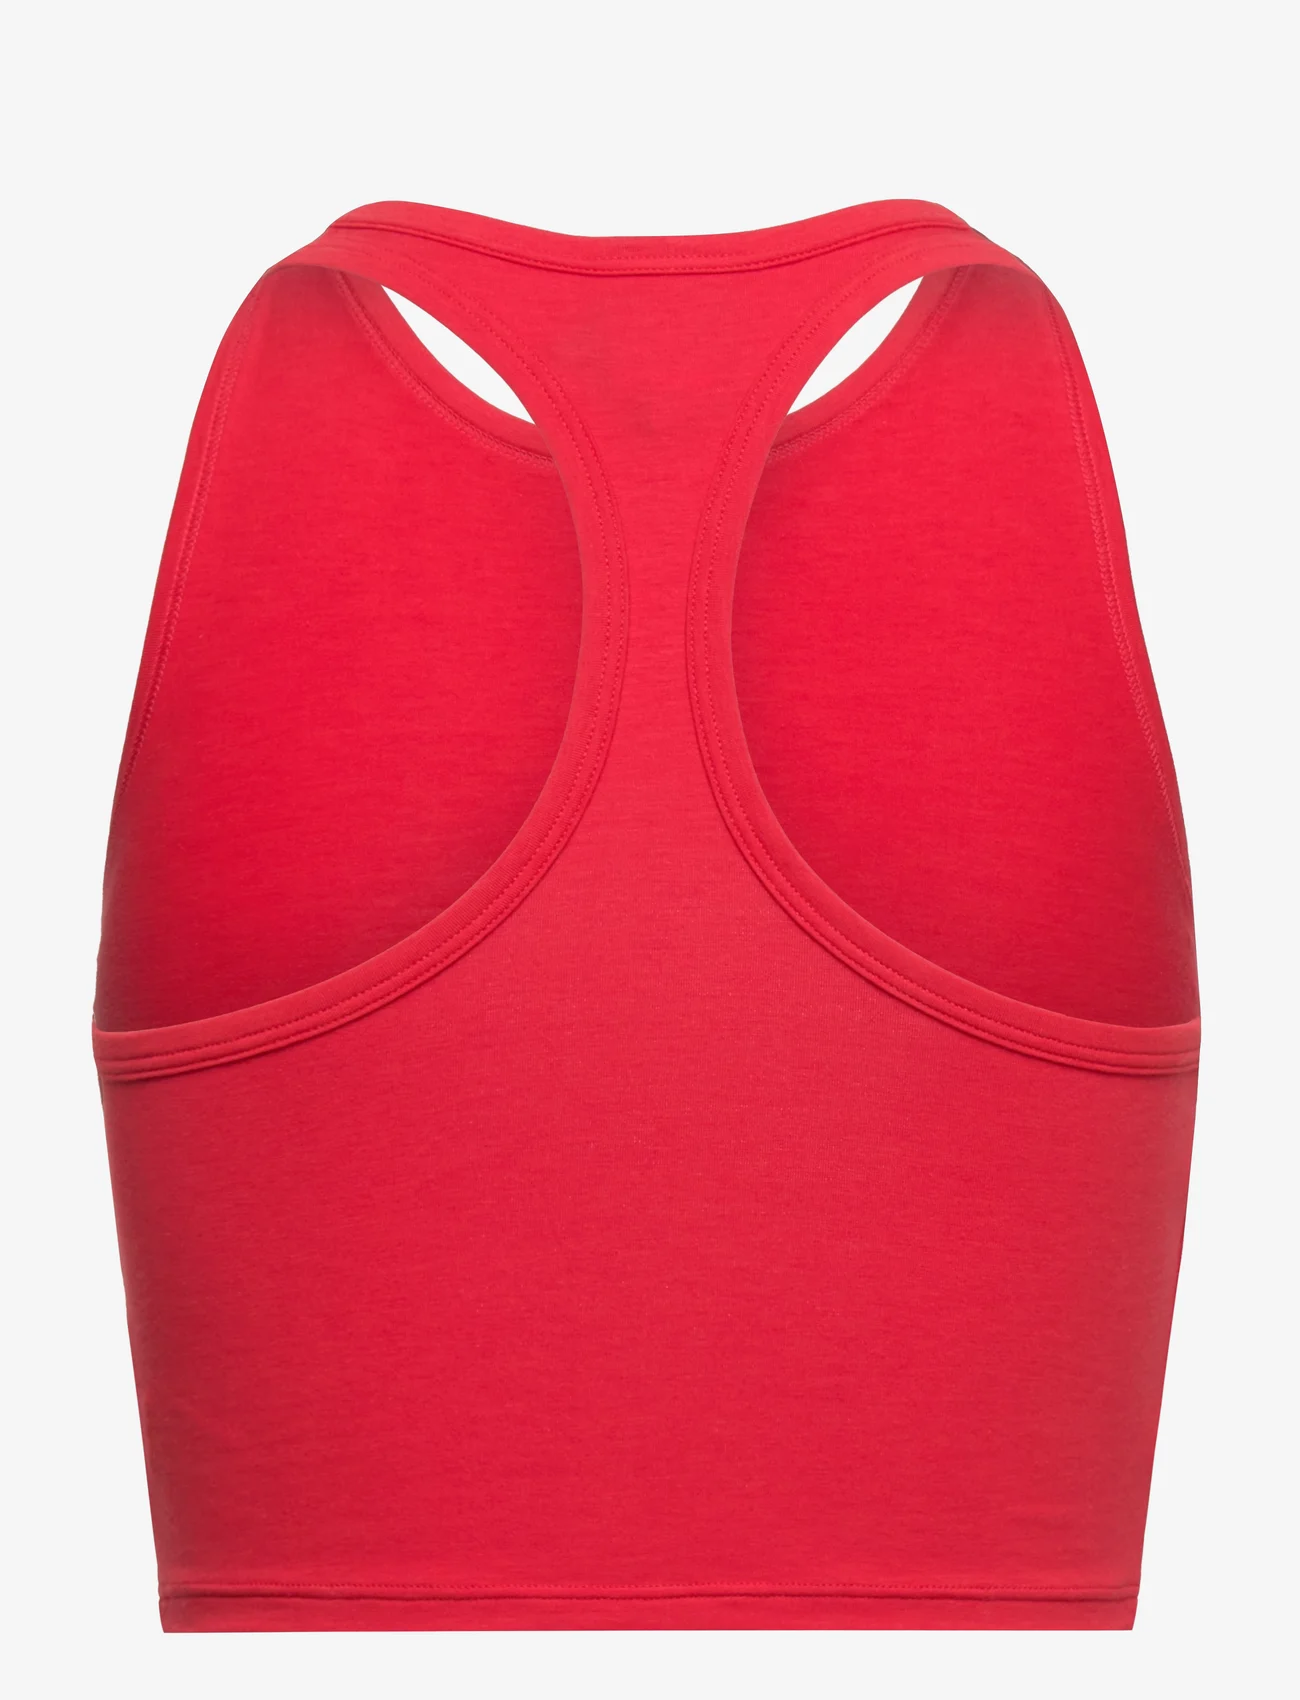 adidas Originals Underwear - Bustier - laveste priser - red - 1